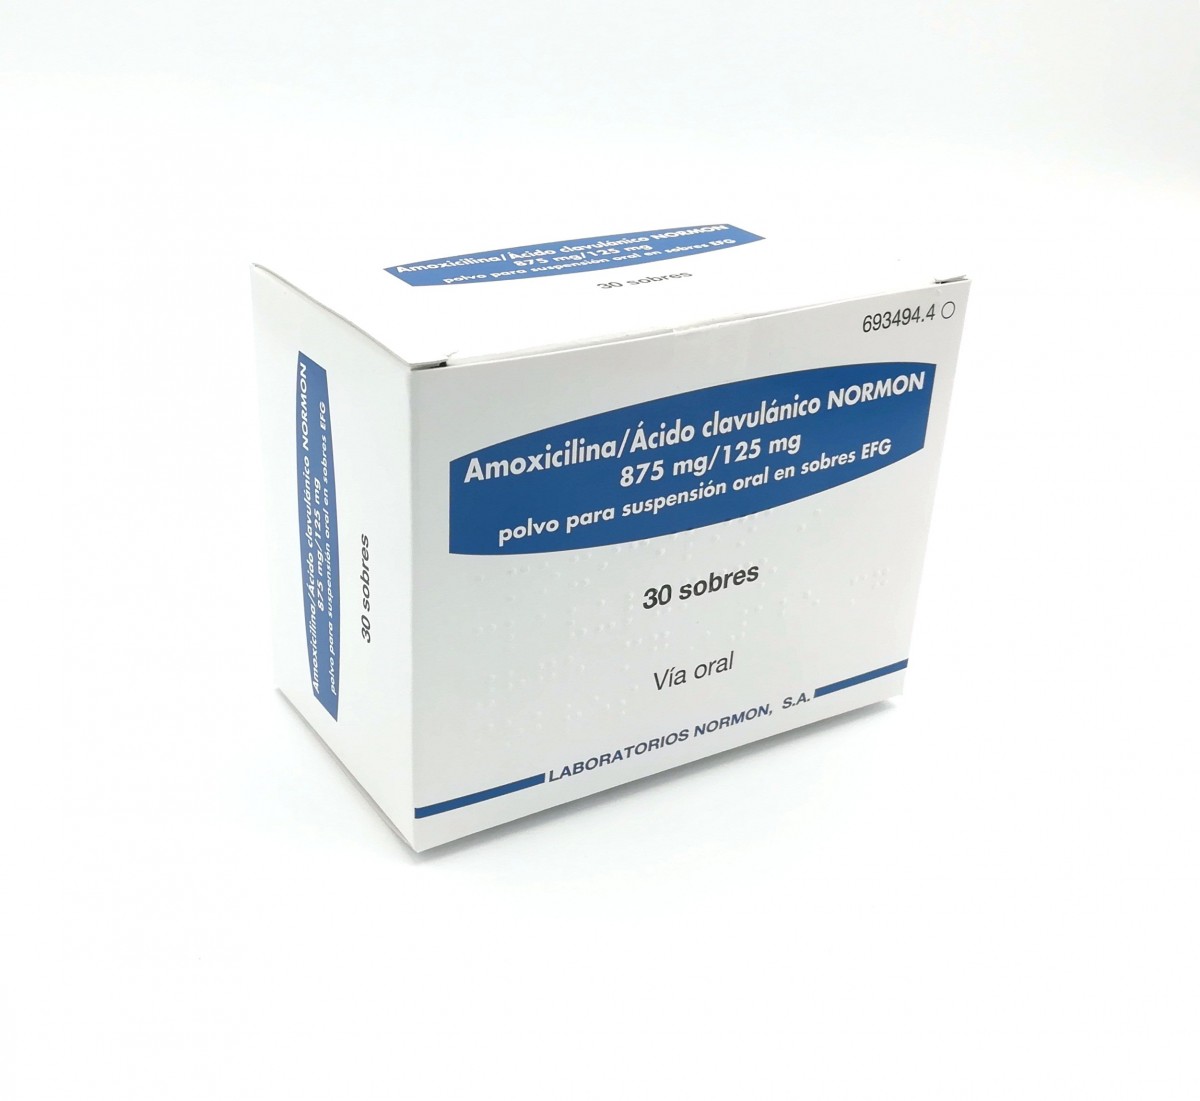 AMOXICILINA/ACIDO CLAVULANICO NORMON 875 mg/125 mg POLVO PARA SUSPENSION ORAL EN SOBRES EFG , 500 sobres fotografía del envase.